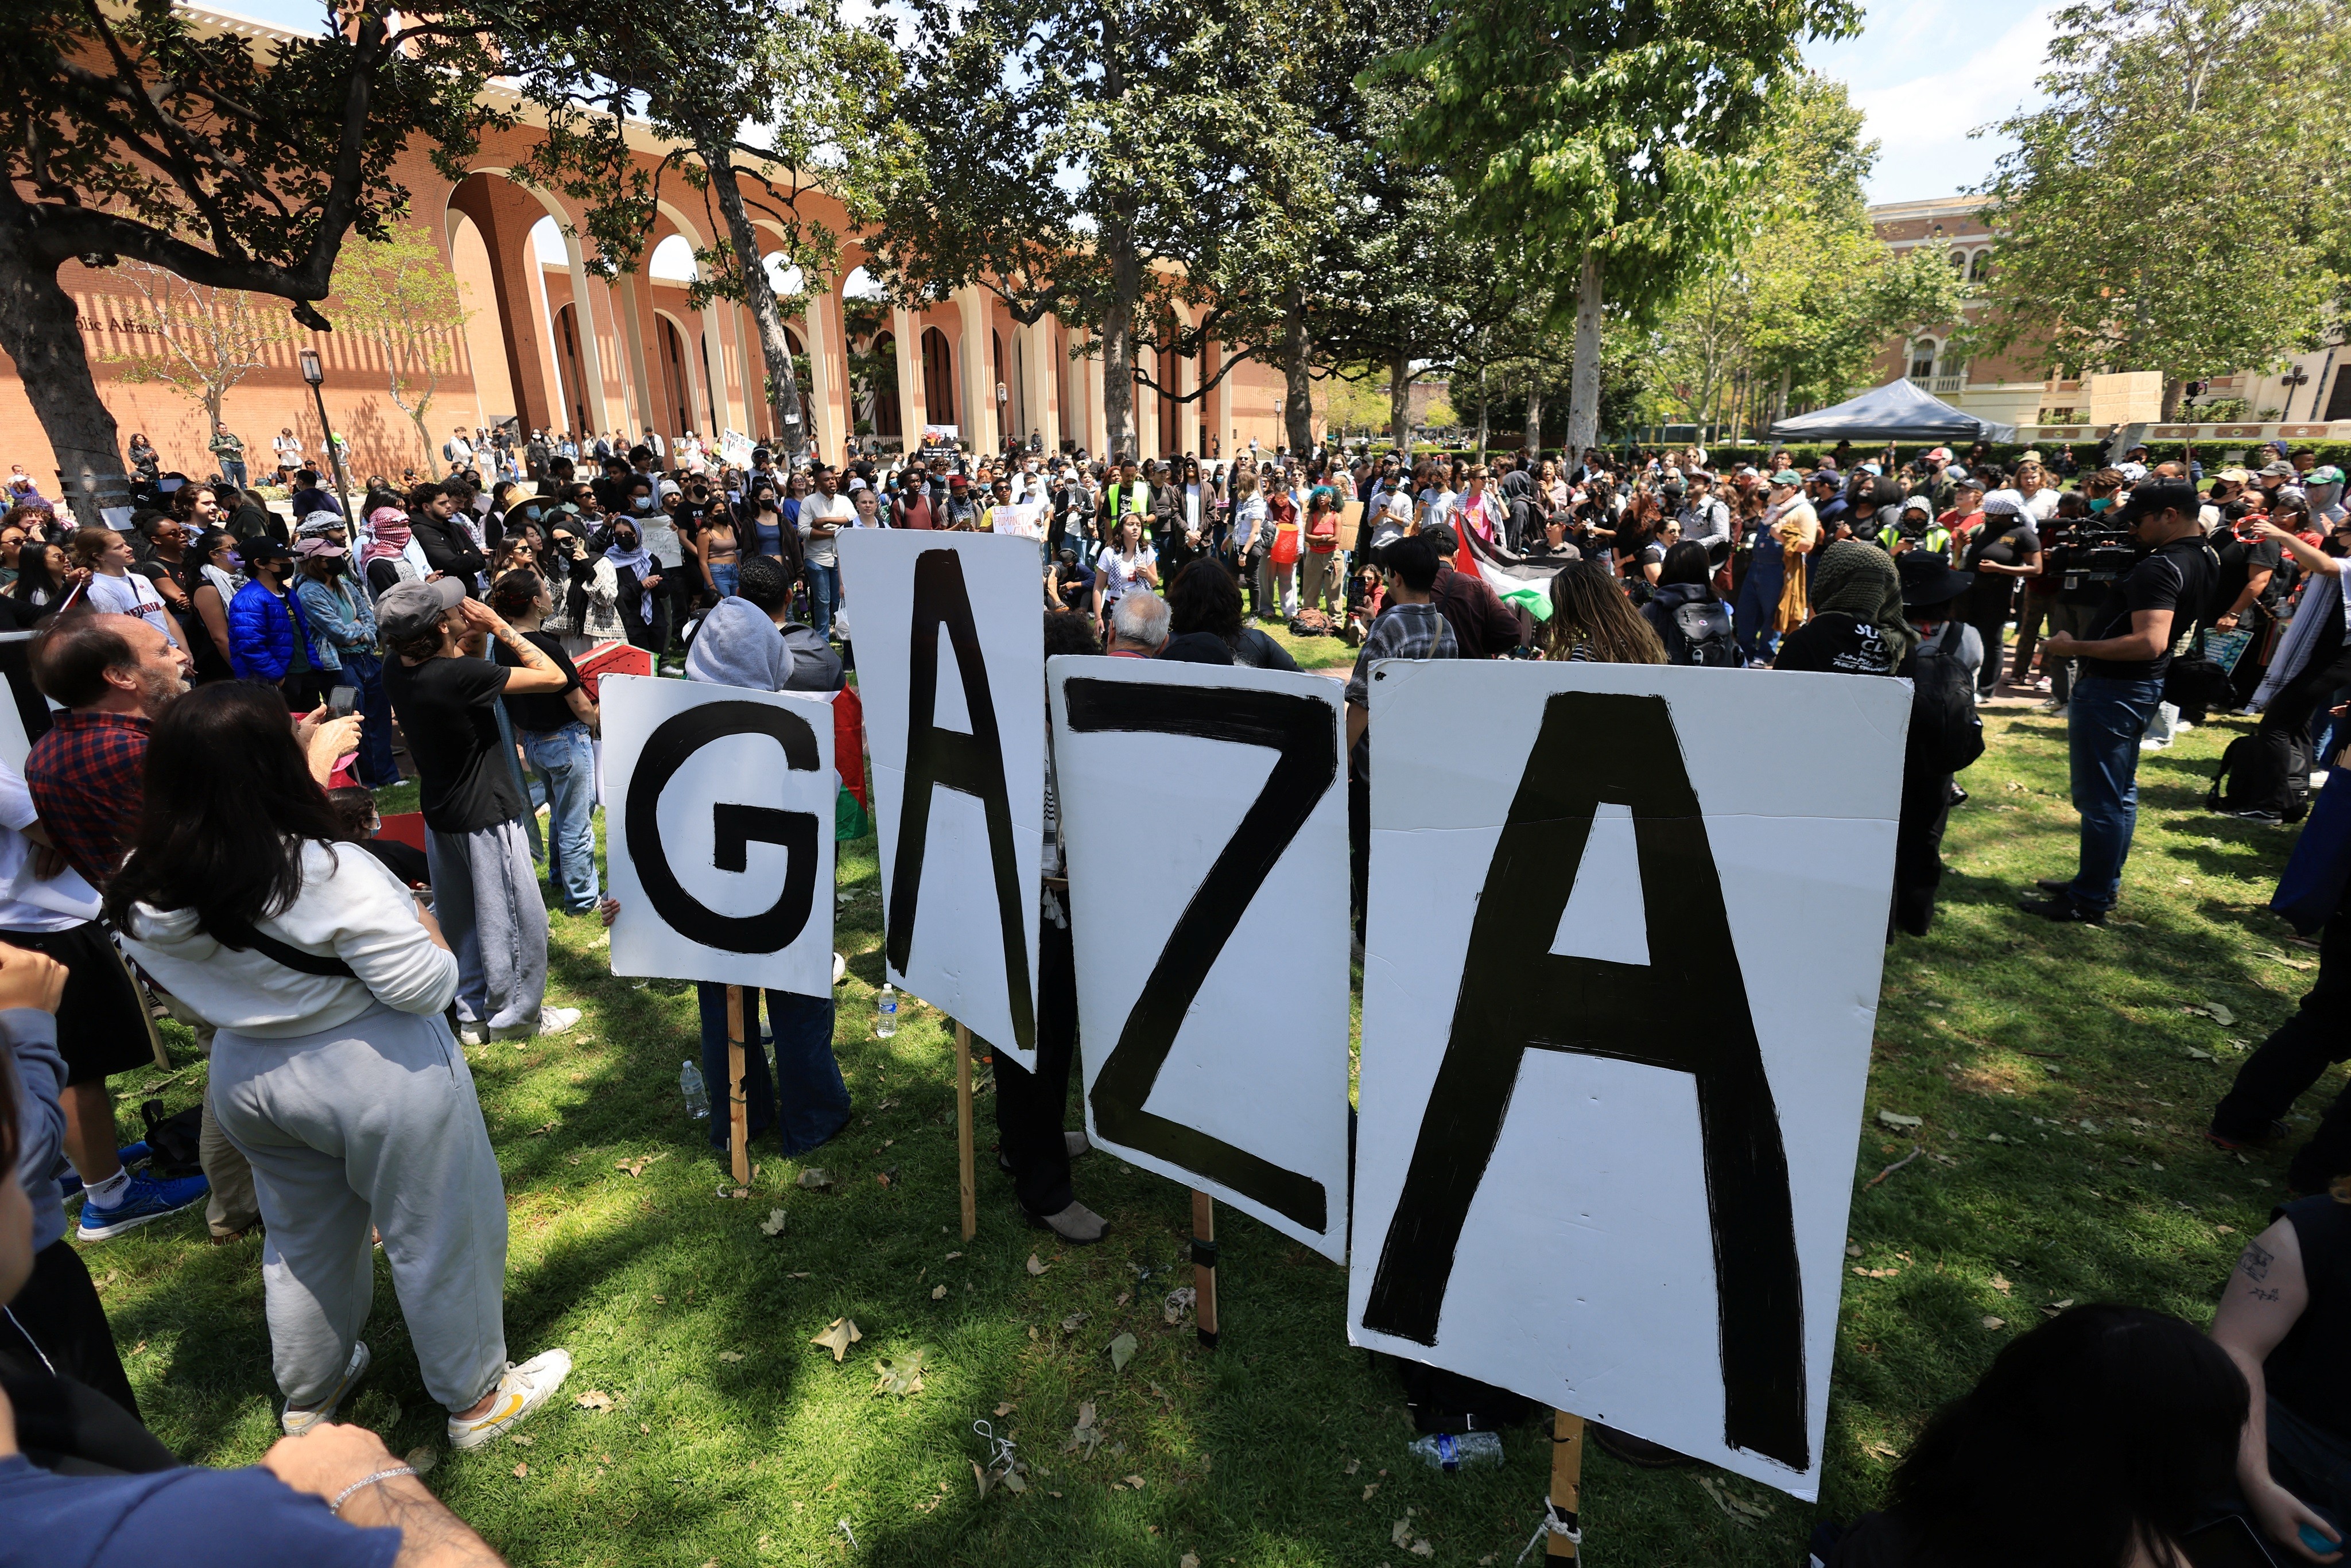 VÍDEO: Protesto pró-Palestina em universidade de Los Angeles tem confusão com a polícia e estudantes presos